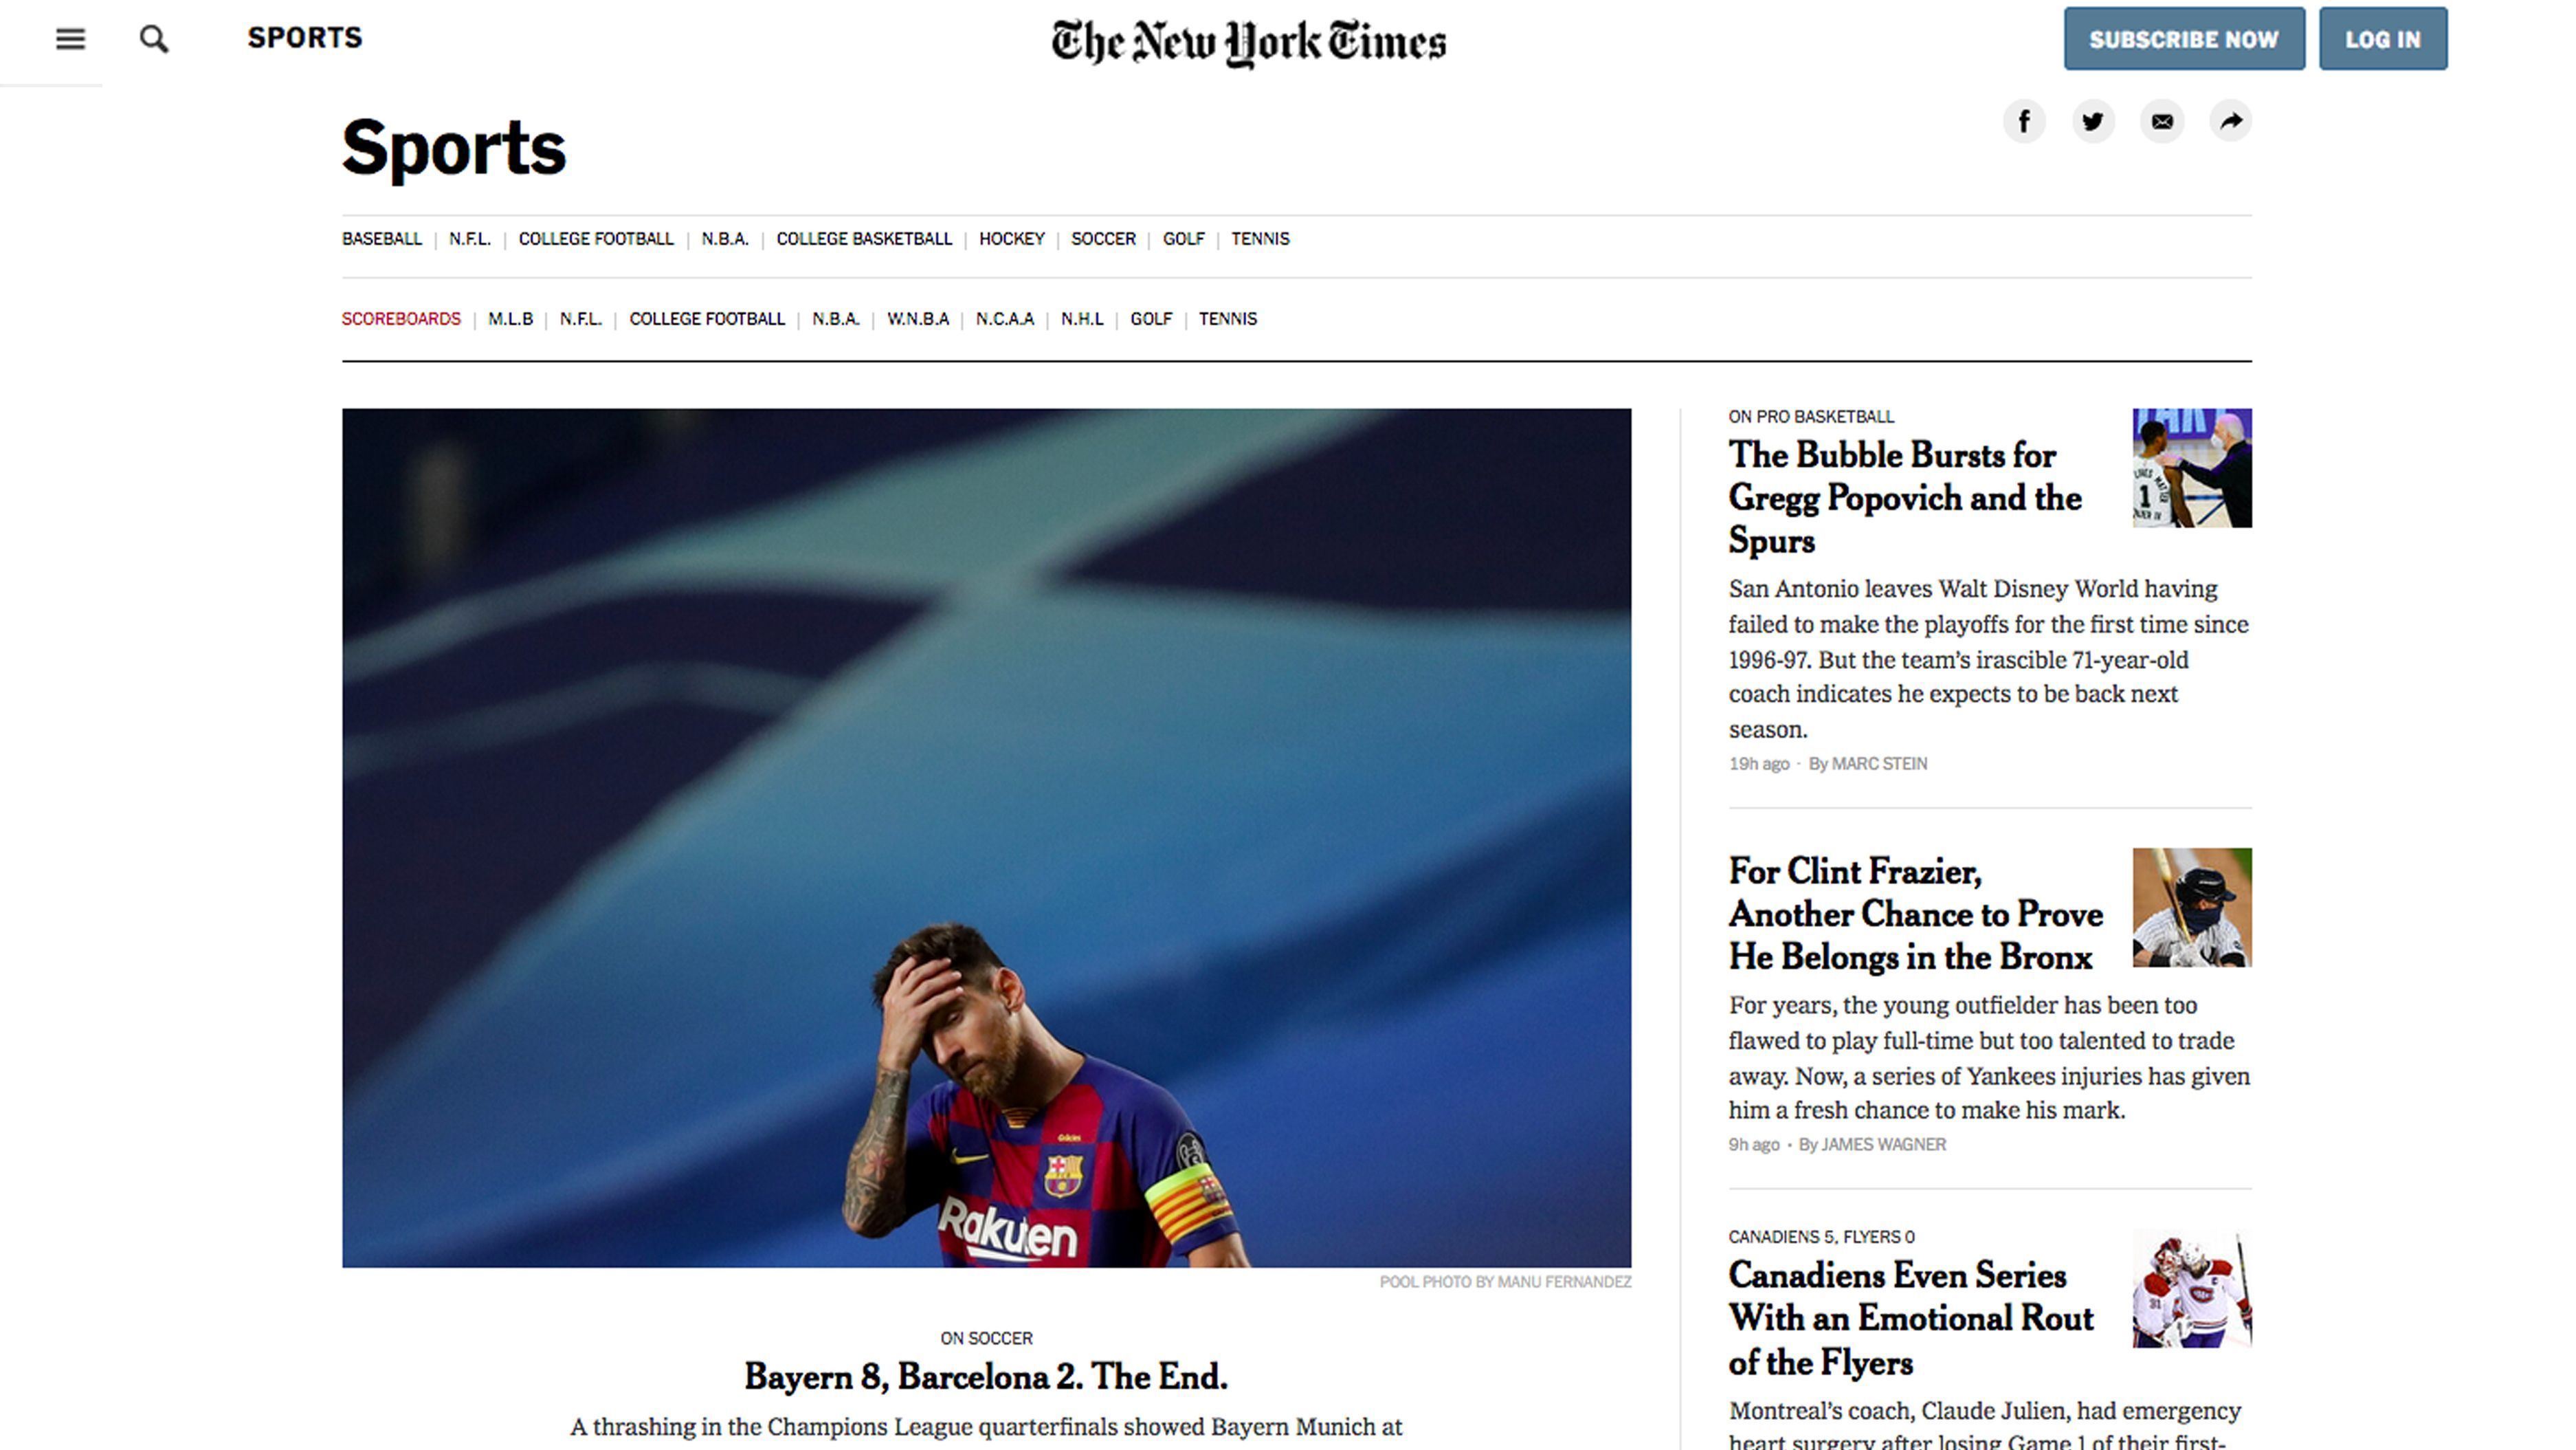 
                <strong>USA</strong><br>
                New York Times: Bayern 8, Barcelona 2. Ende.
              